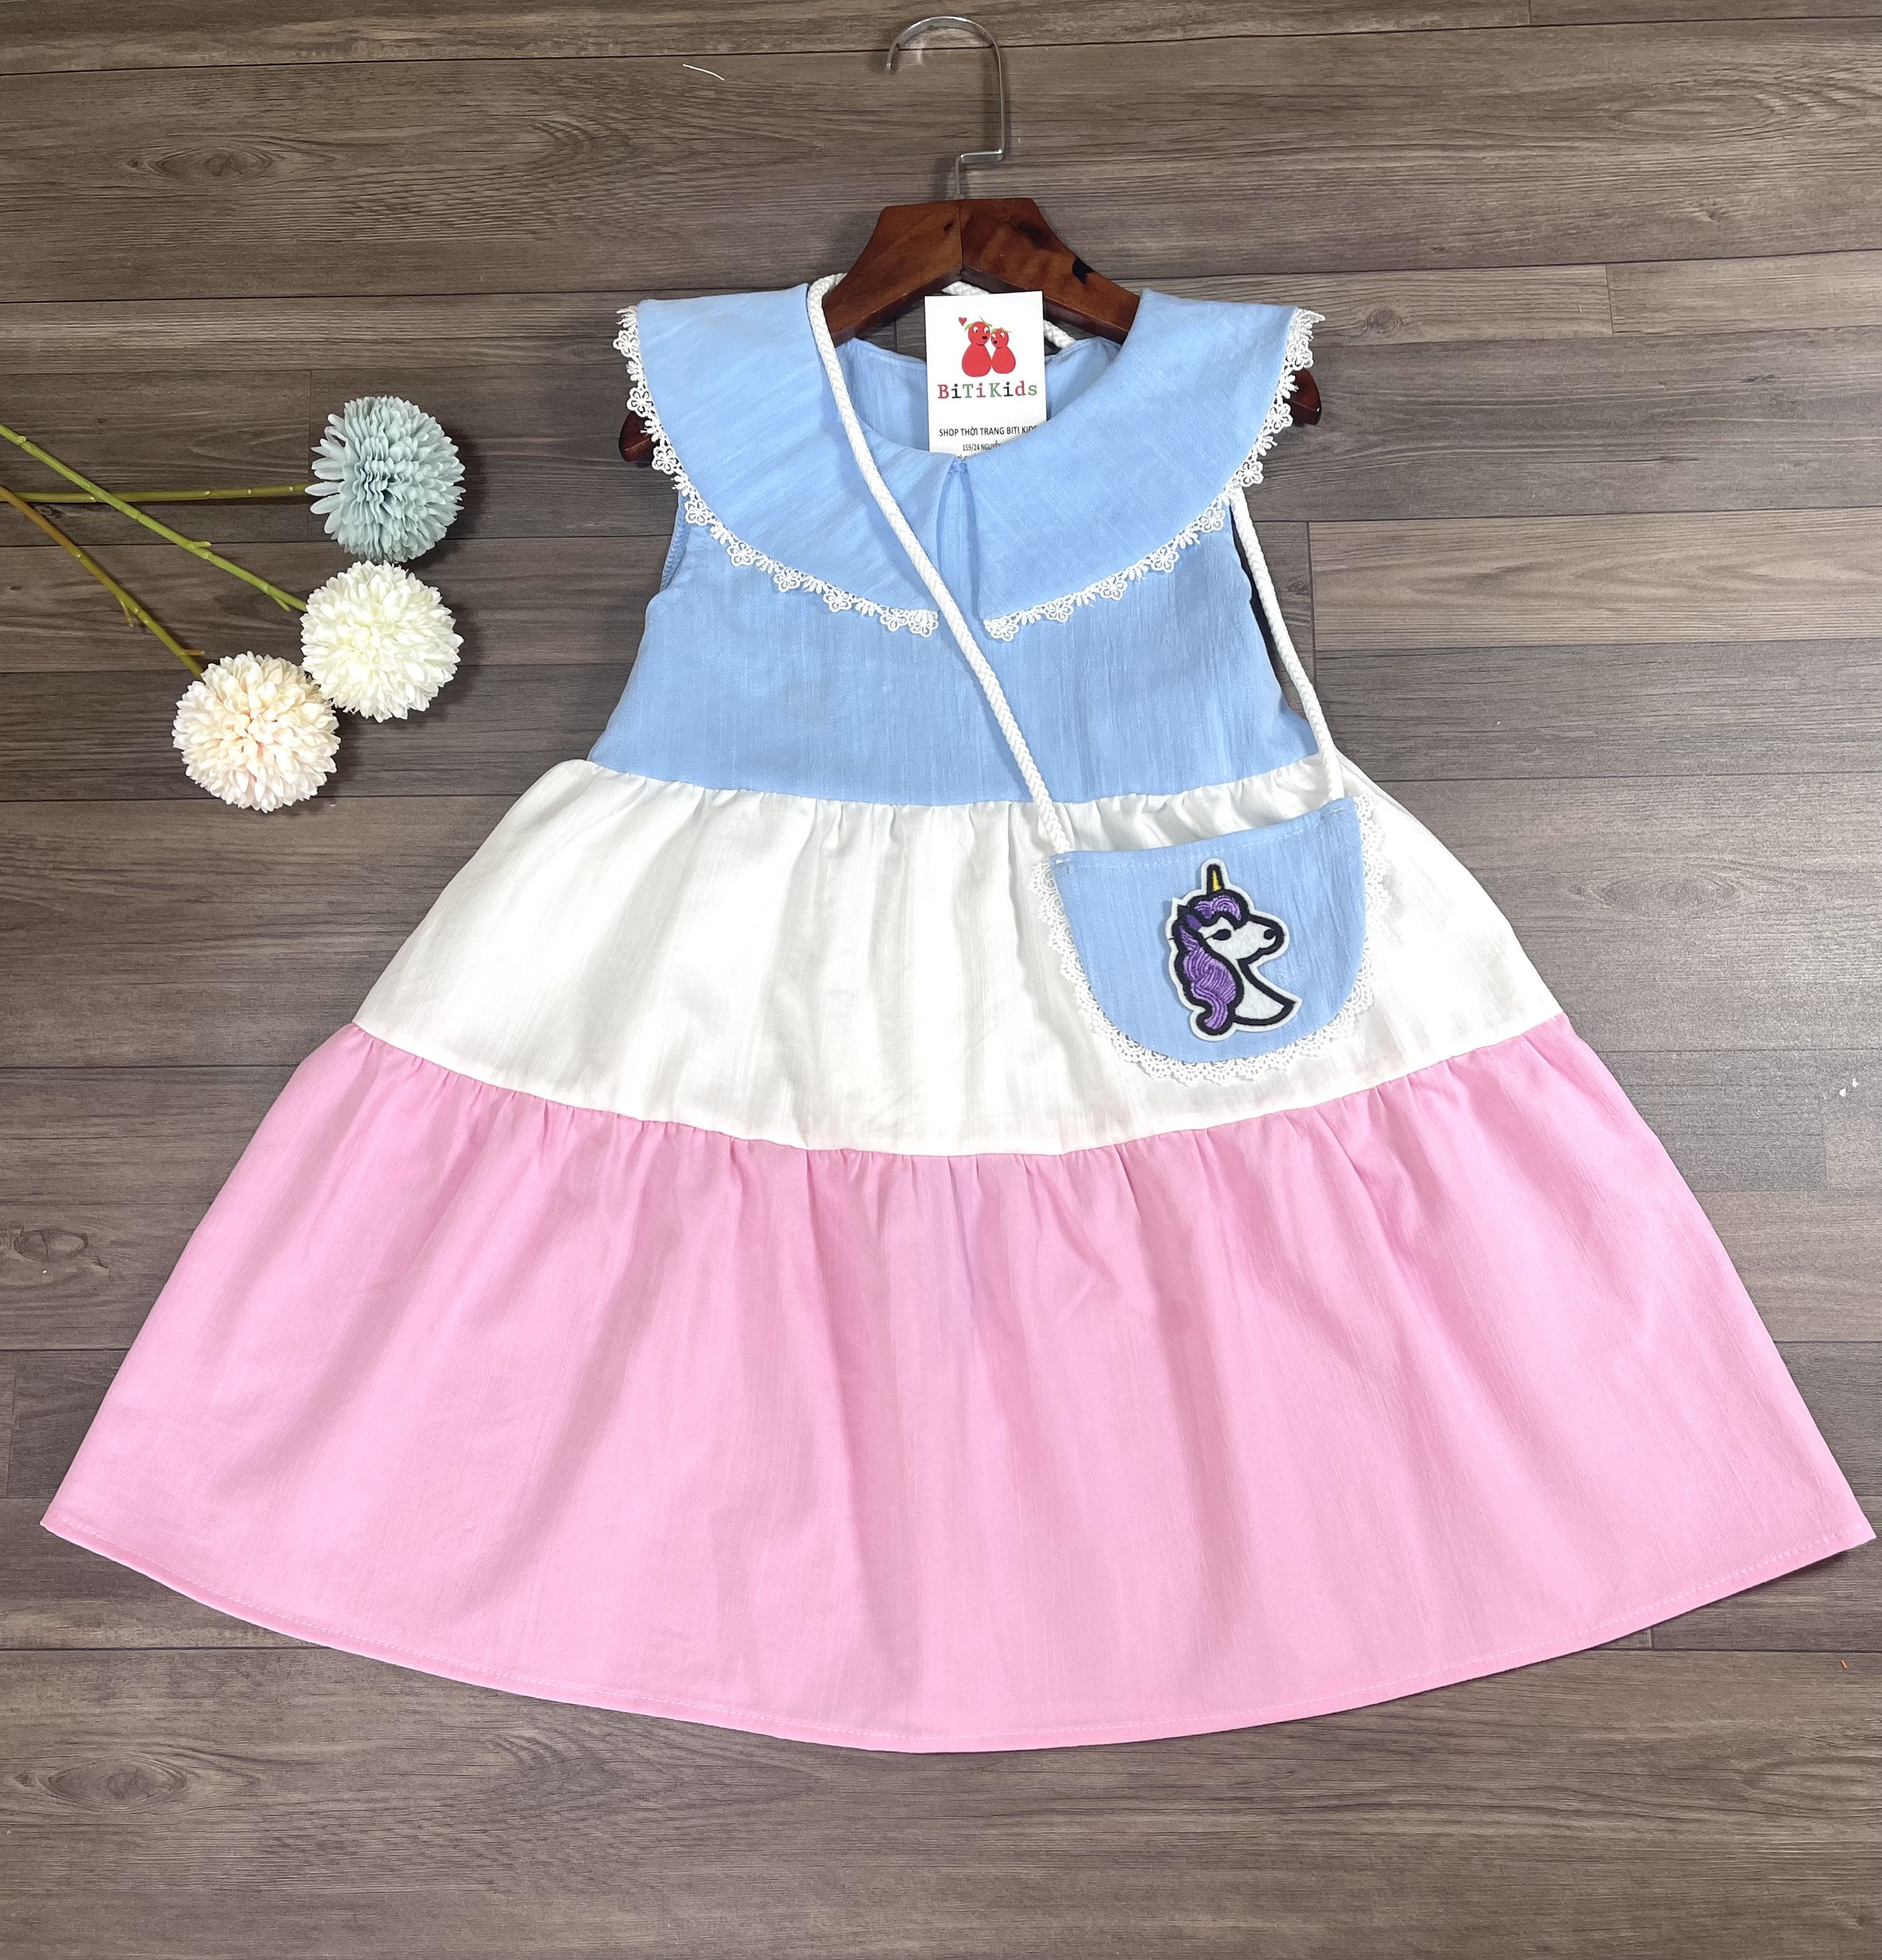 Đầm bé gái,váy trẻ em phối 3 màu vải Linen cao cấp kèm túi siêu xinh cho bé ,BITIKIDS size 1 đến 8 tuổi.